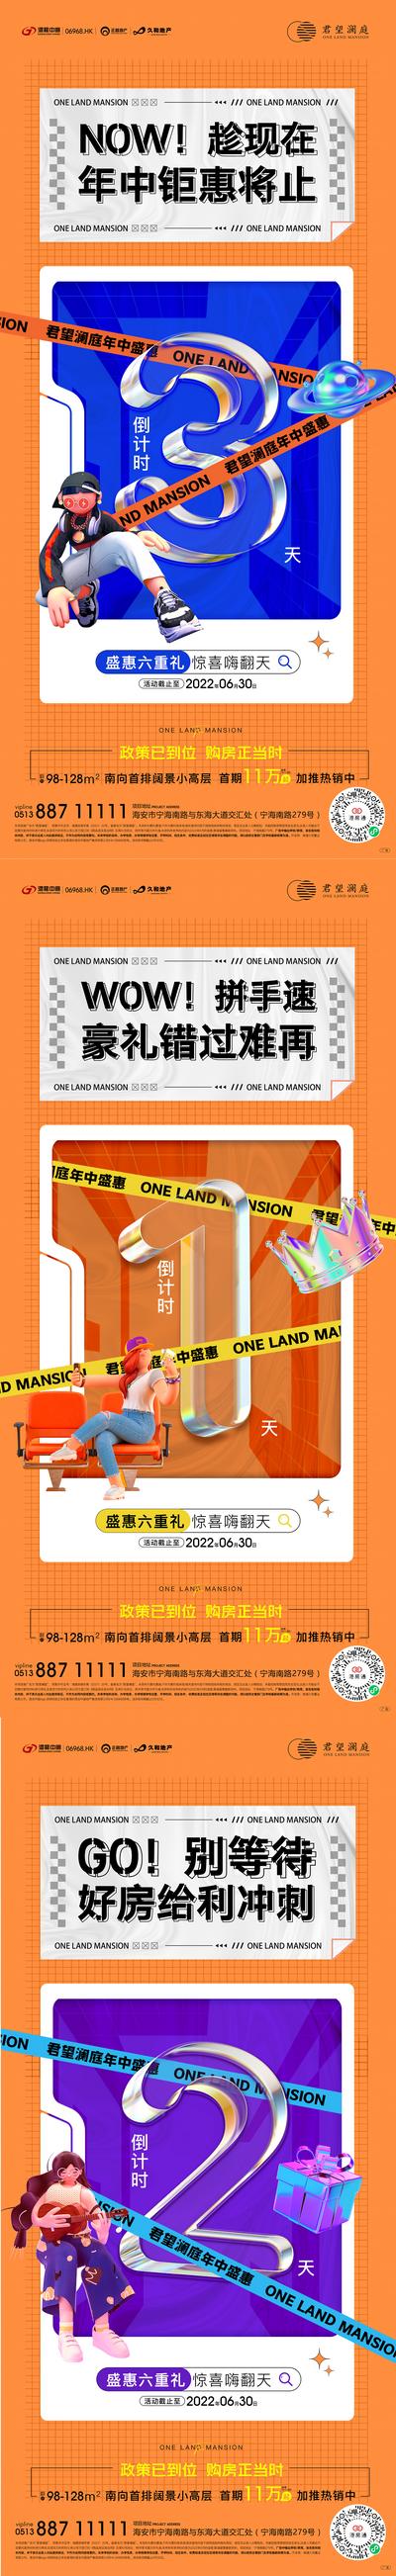 南门网 广告 海报 地产 倒计时 数字 透明 水晶 插画 手绘 商业 旺铺